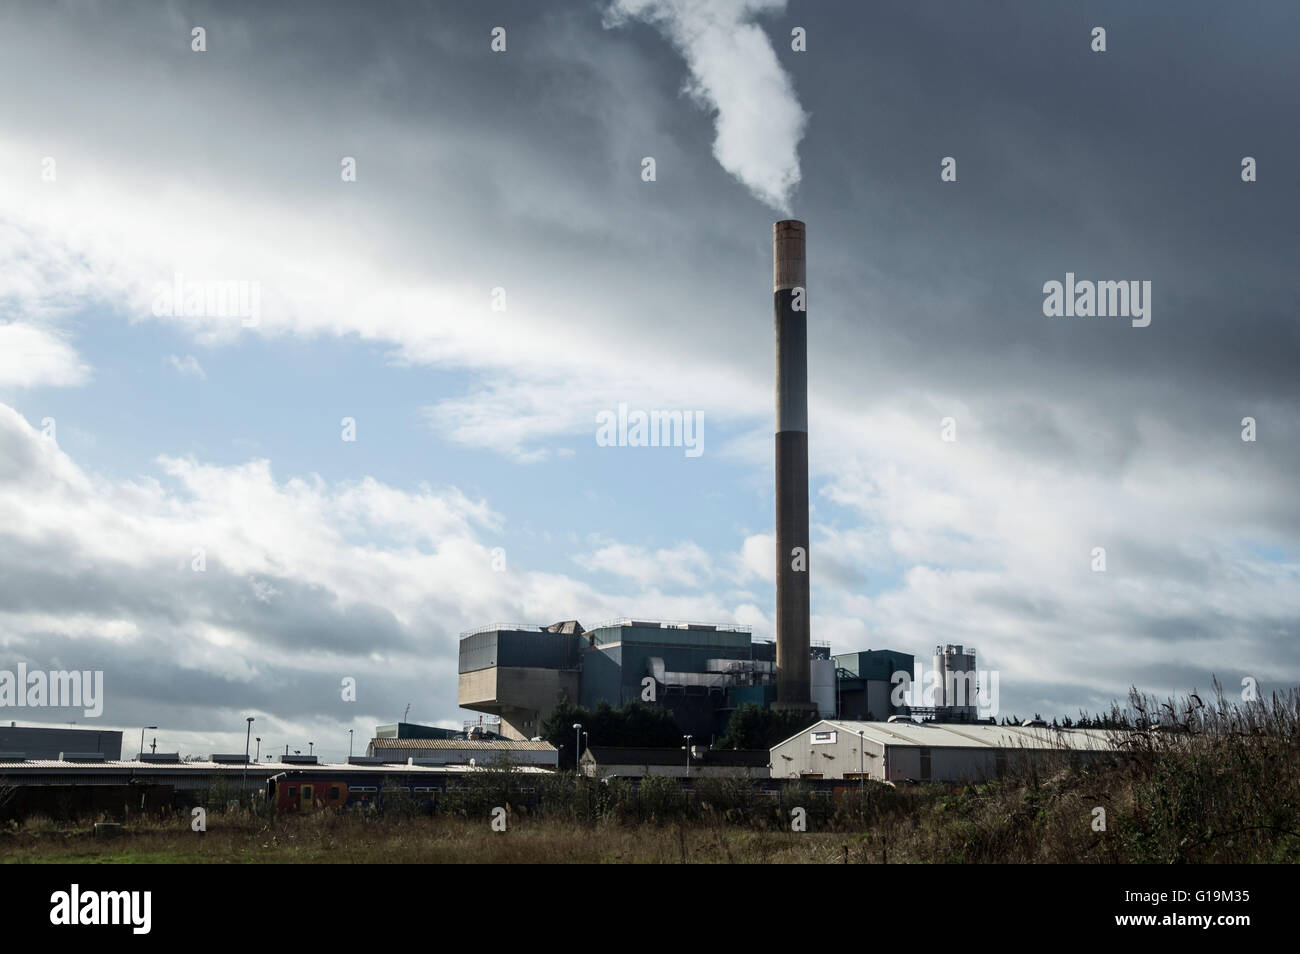 Edificio industrial con chimenea alta Foto de stock